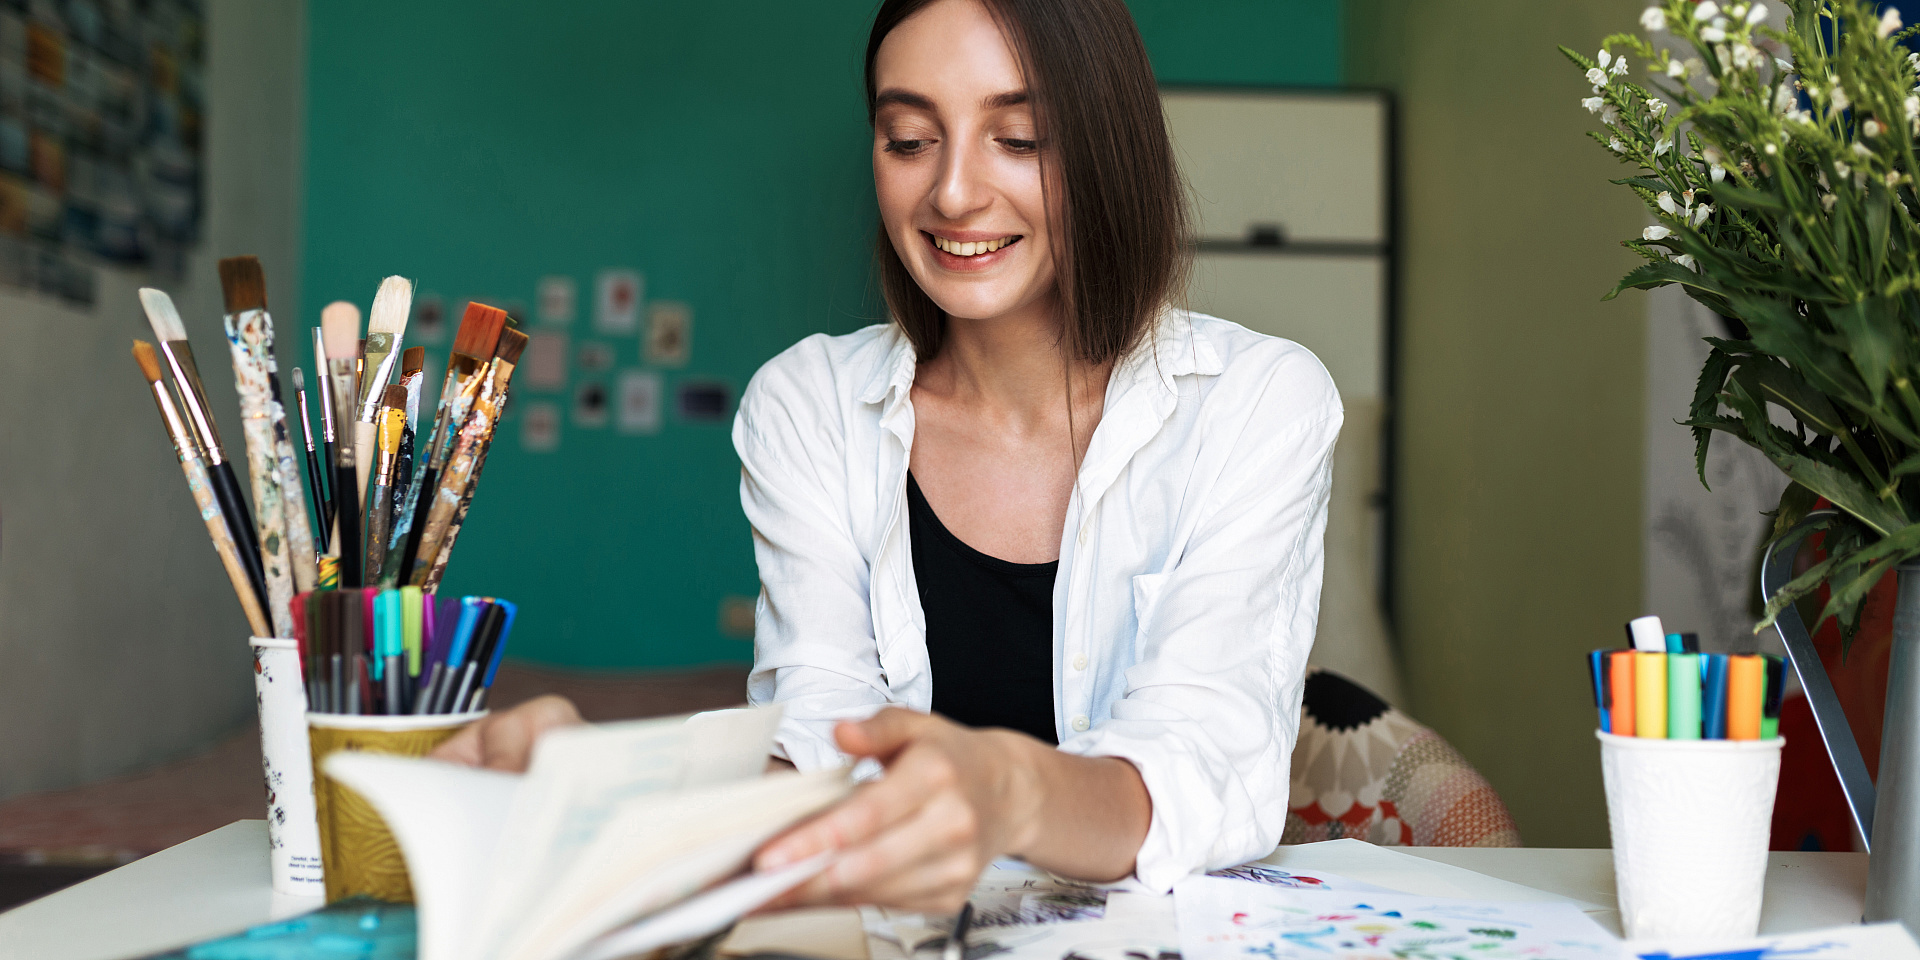 Jeune femme souriante assise à un bureau en train de peinturer